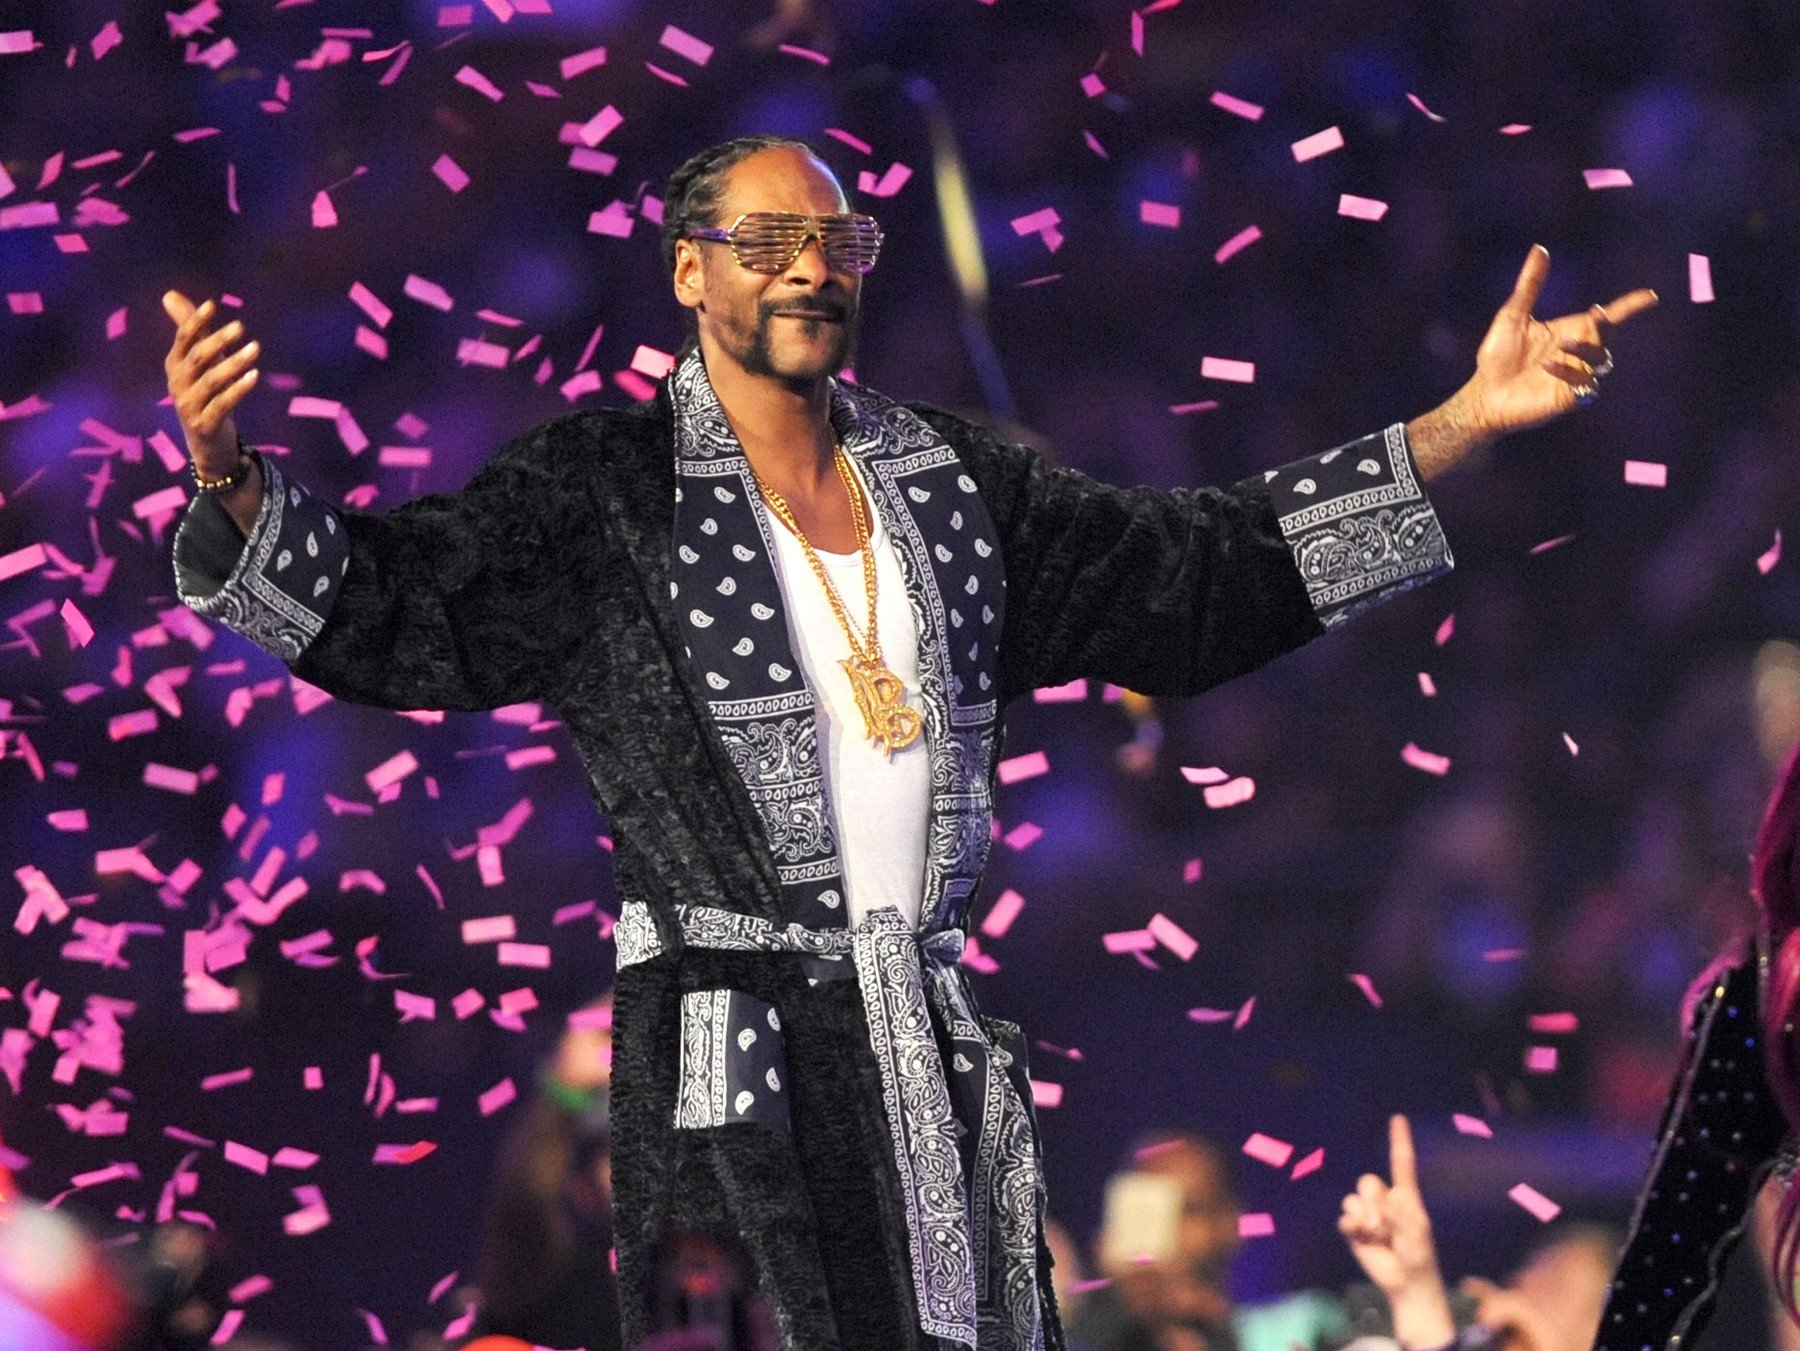 Snoop rappelve mutatja be a legújabb menüt